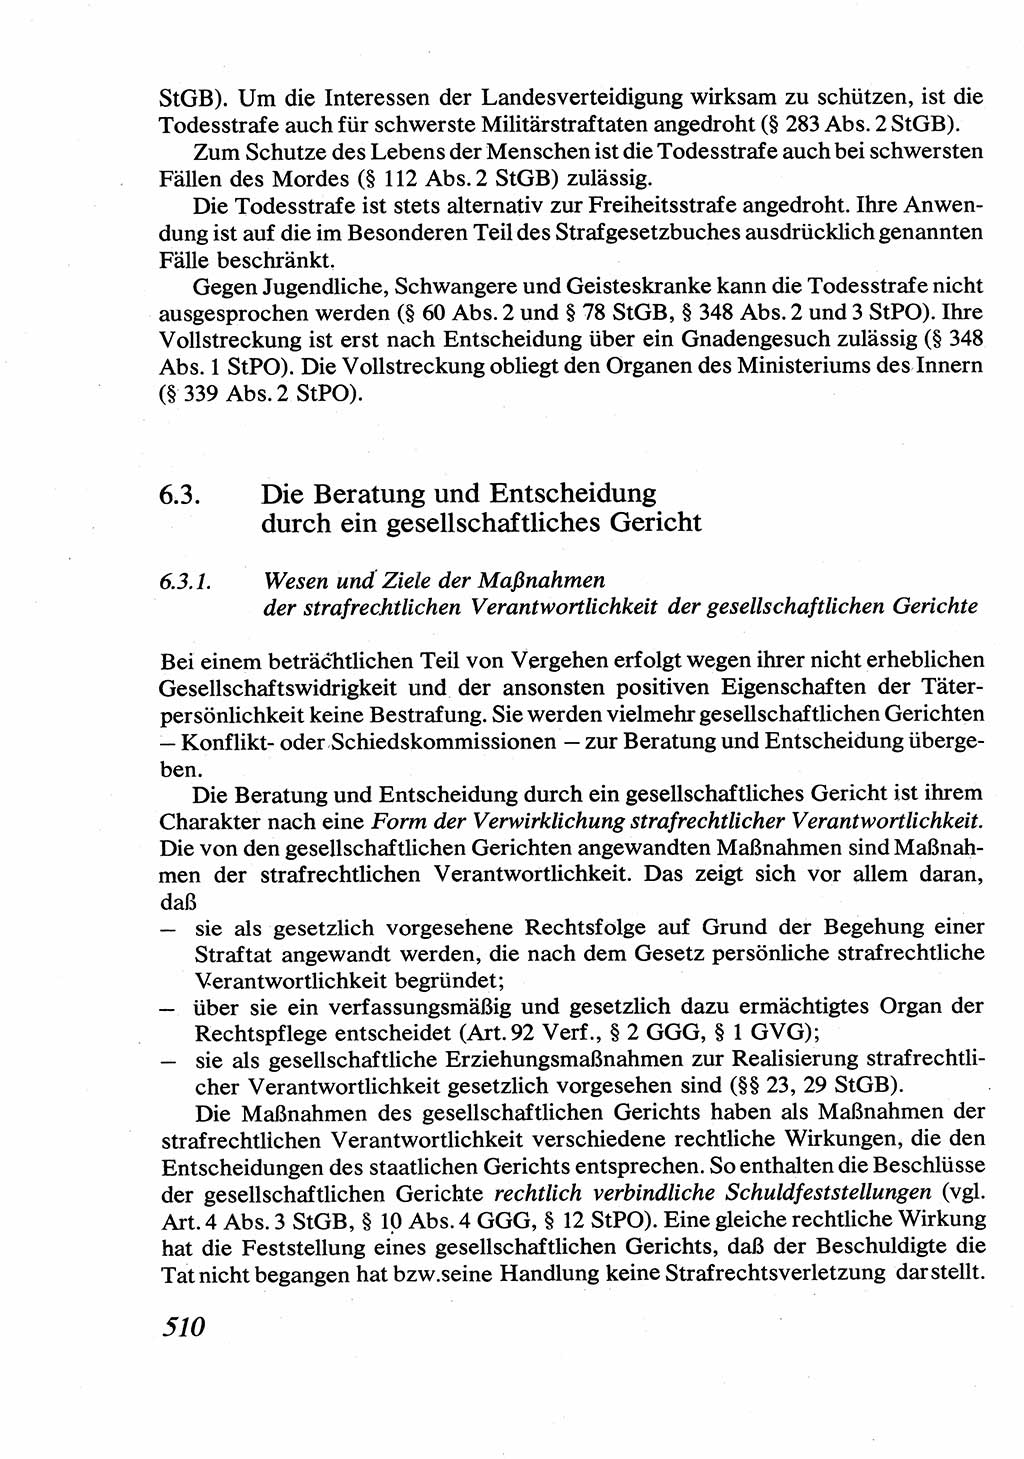 Strafrecht [Deutsche Demokratische Republik (DDR)], Allgemeiner Teil, Lehrbuch 1976, Seite 510 (Strafr. DDR AT Lb. 1976, S. 510)